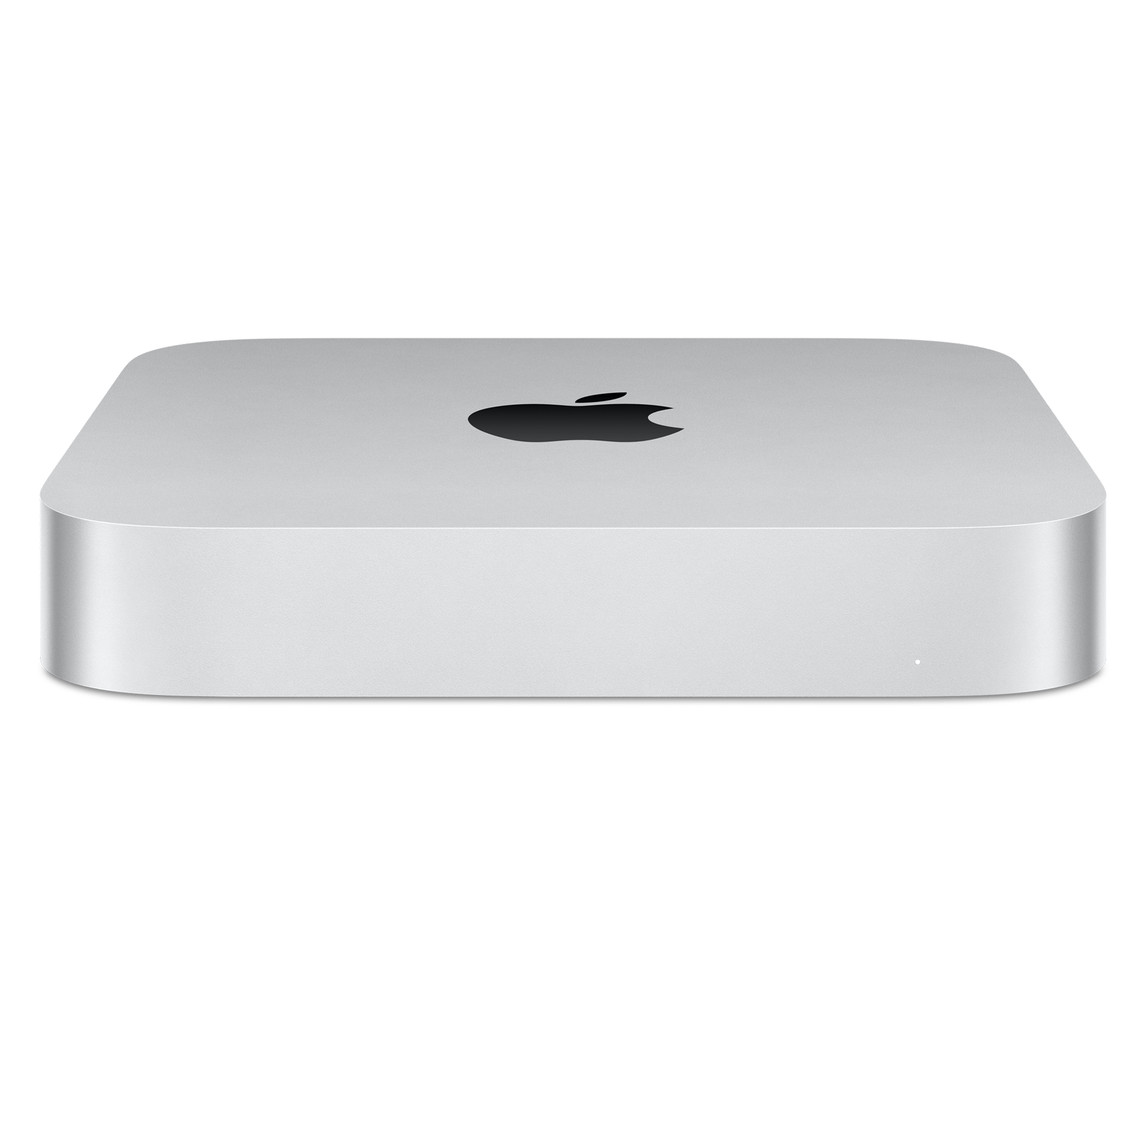 Schuin vooraanzicht van Mac mini met het Apple logo aan de bovenkant